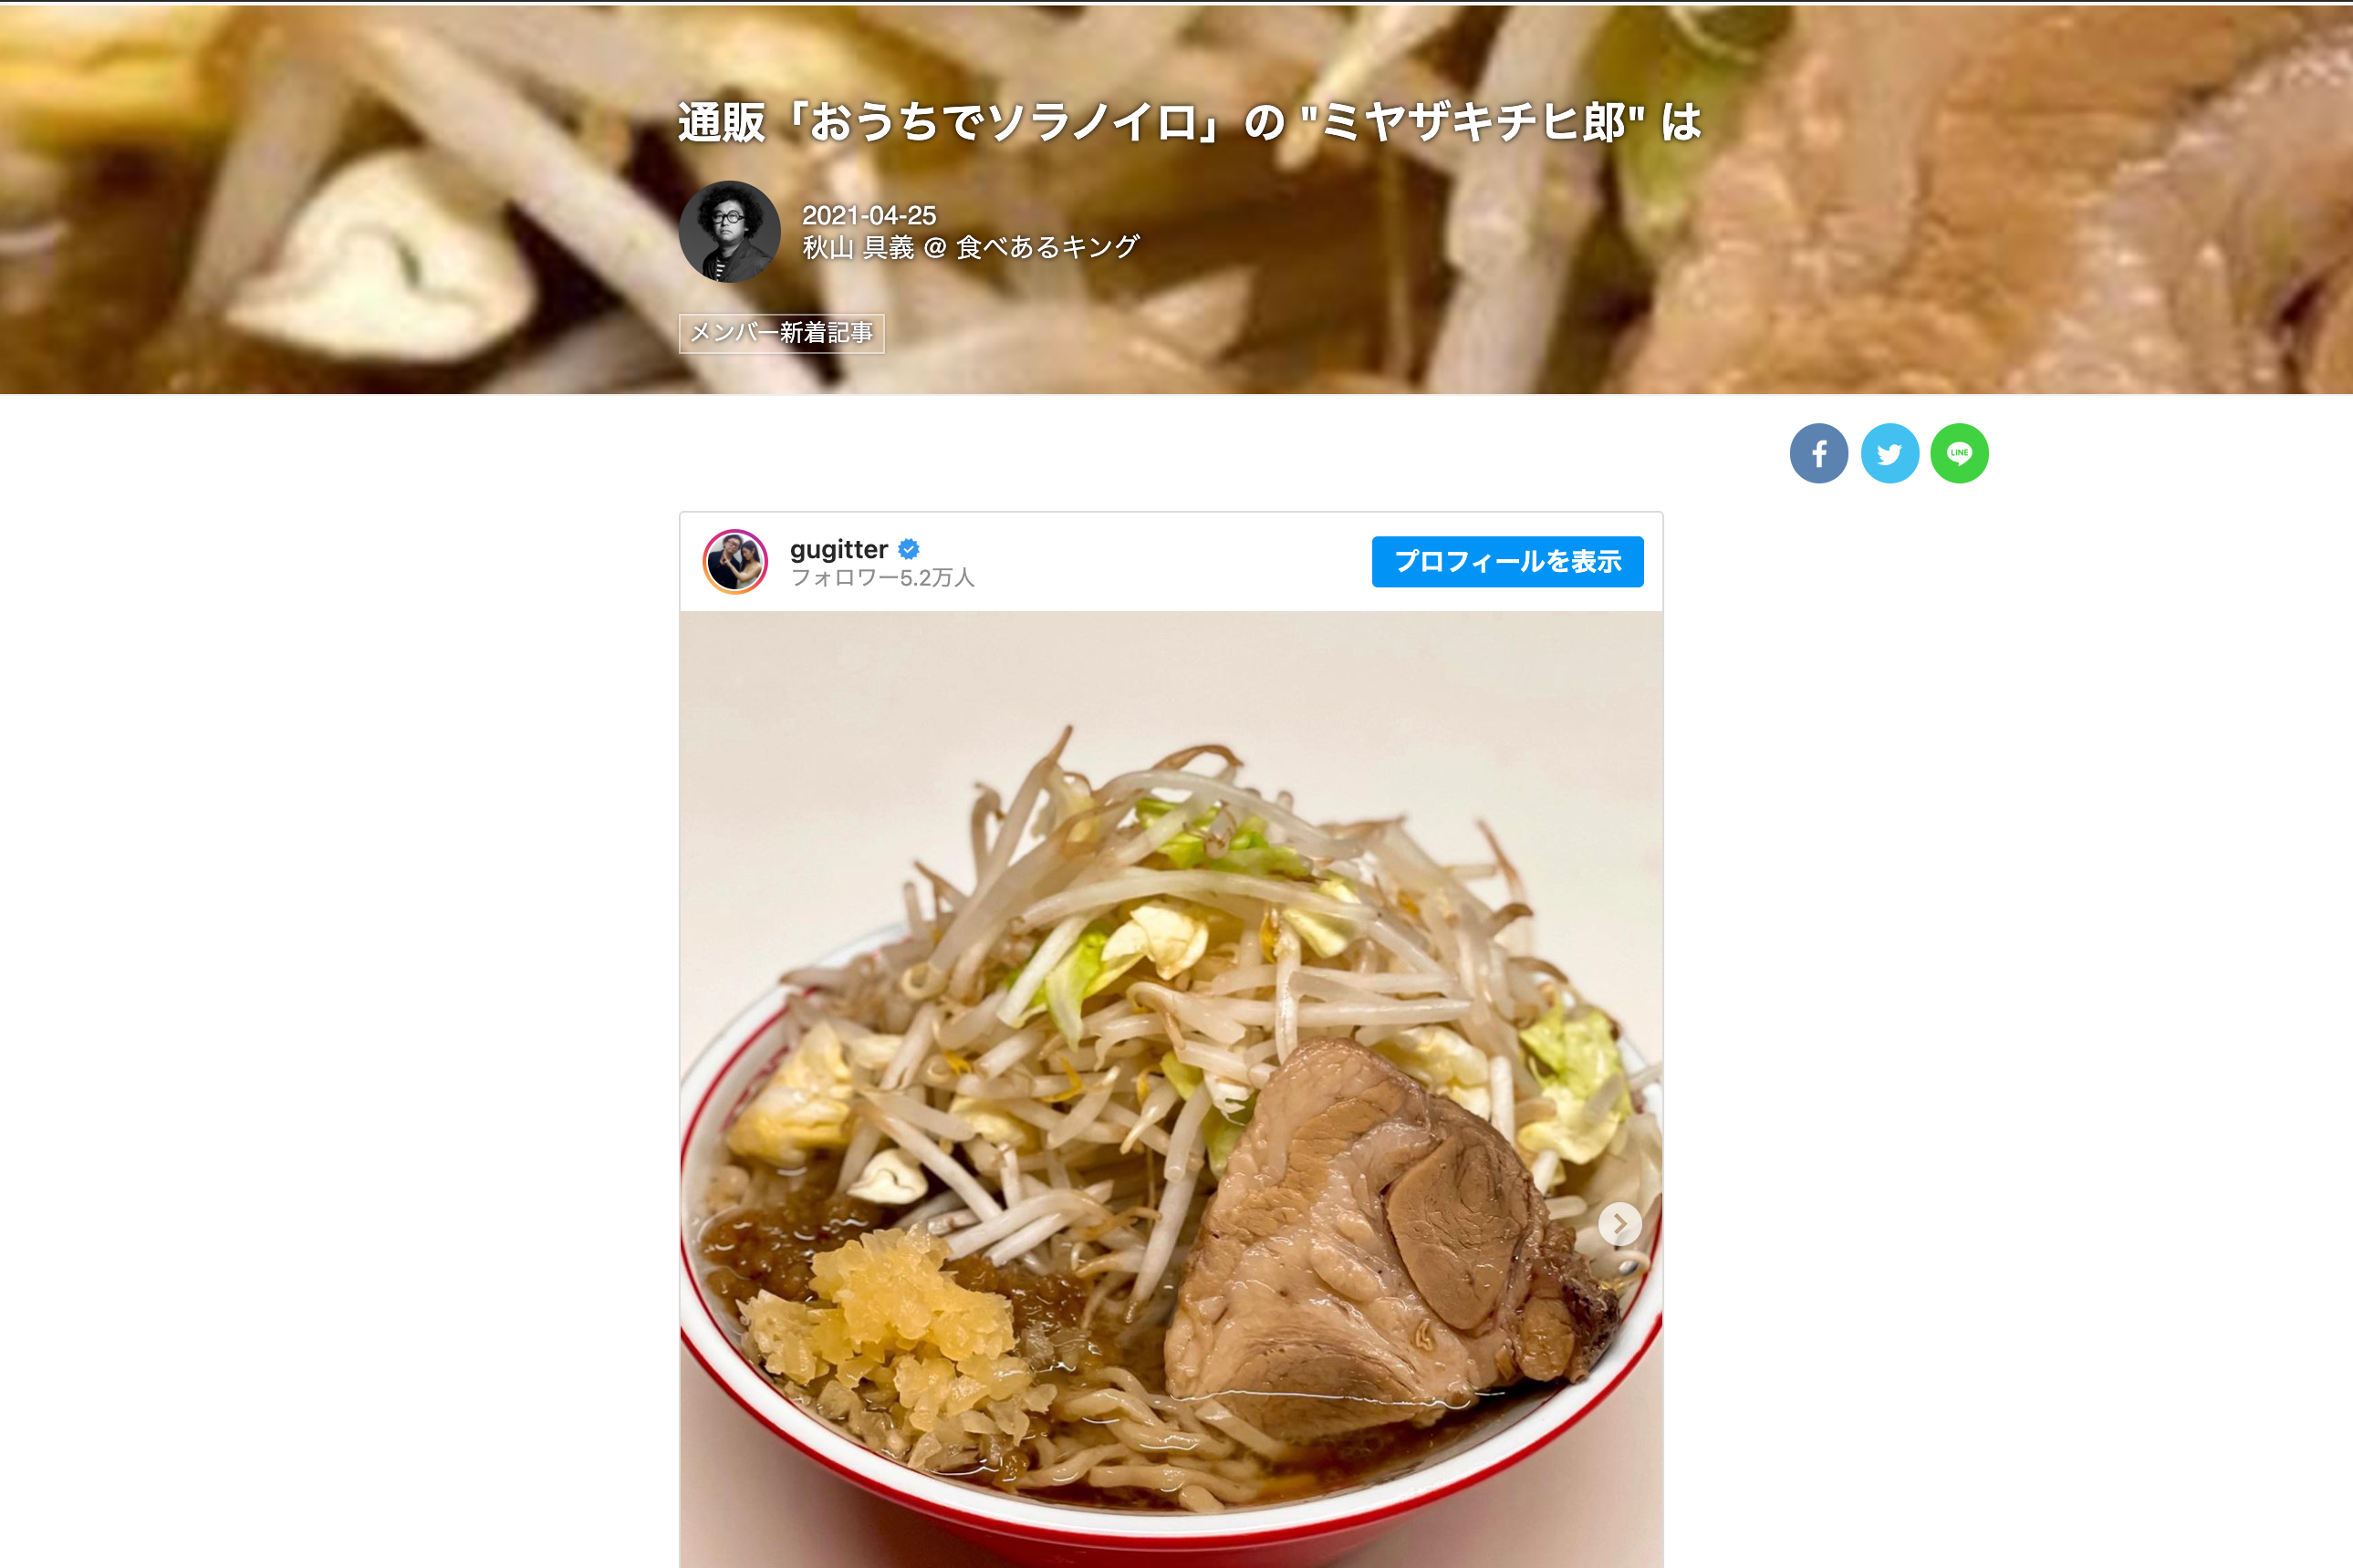 「食べログ」グルメ著名人 秋山具義さんに「ミヤザキチヒ郎」を取り上げていただきました!